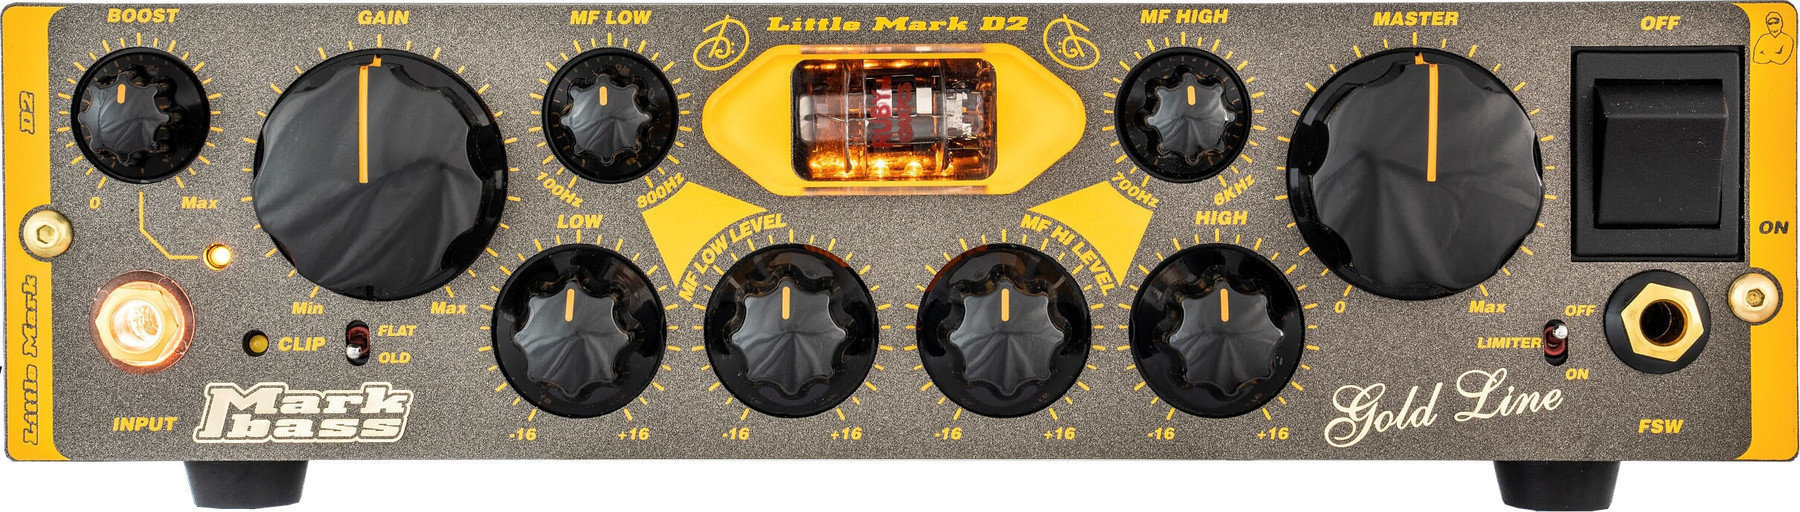 Hybrid Bass Amplifier Markbass Little Mark Vintage D2